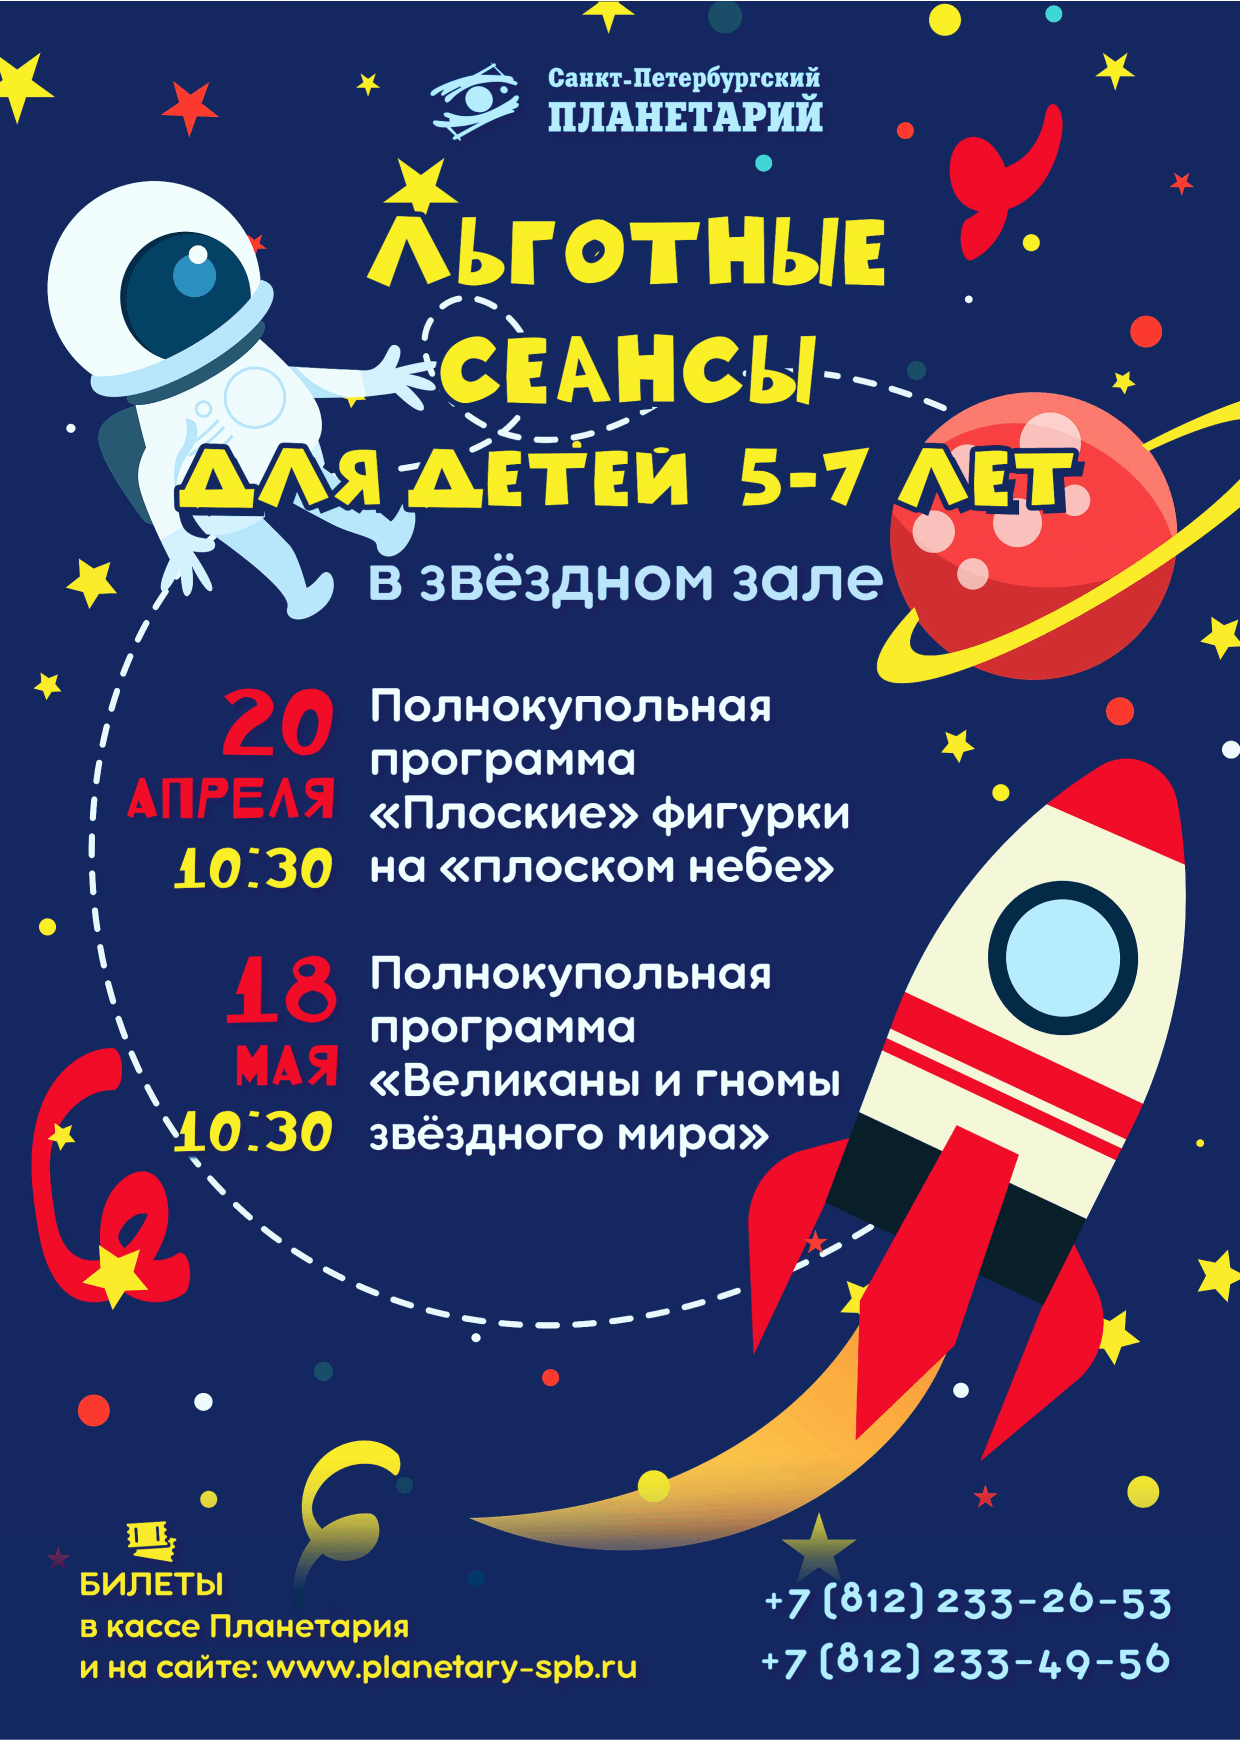 В Санкт-Петербургском Планетарии проходят Льготные сеансы для детей (5+)! 